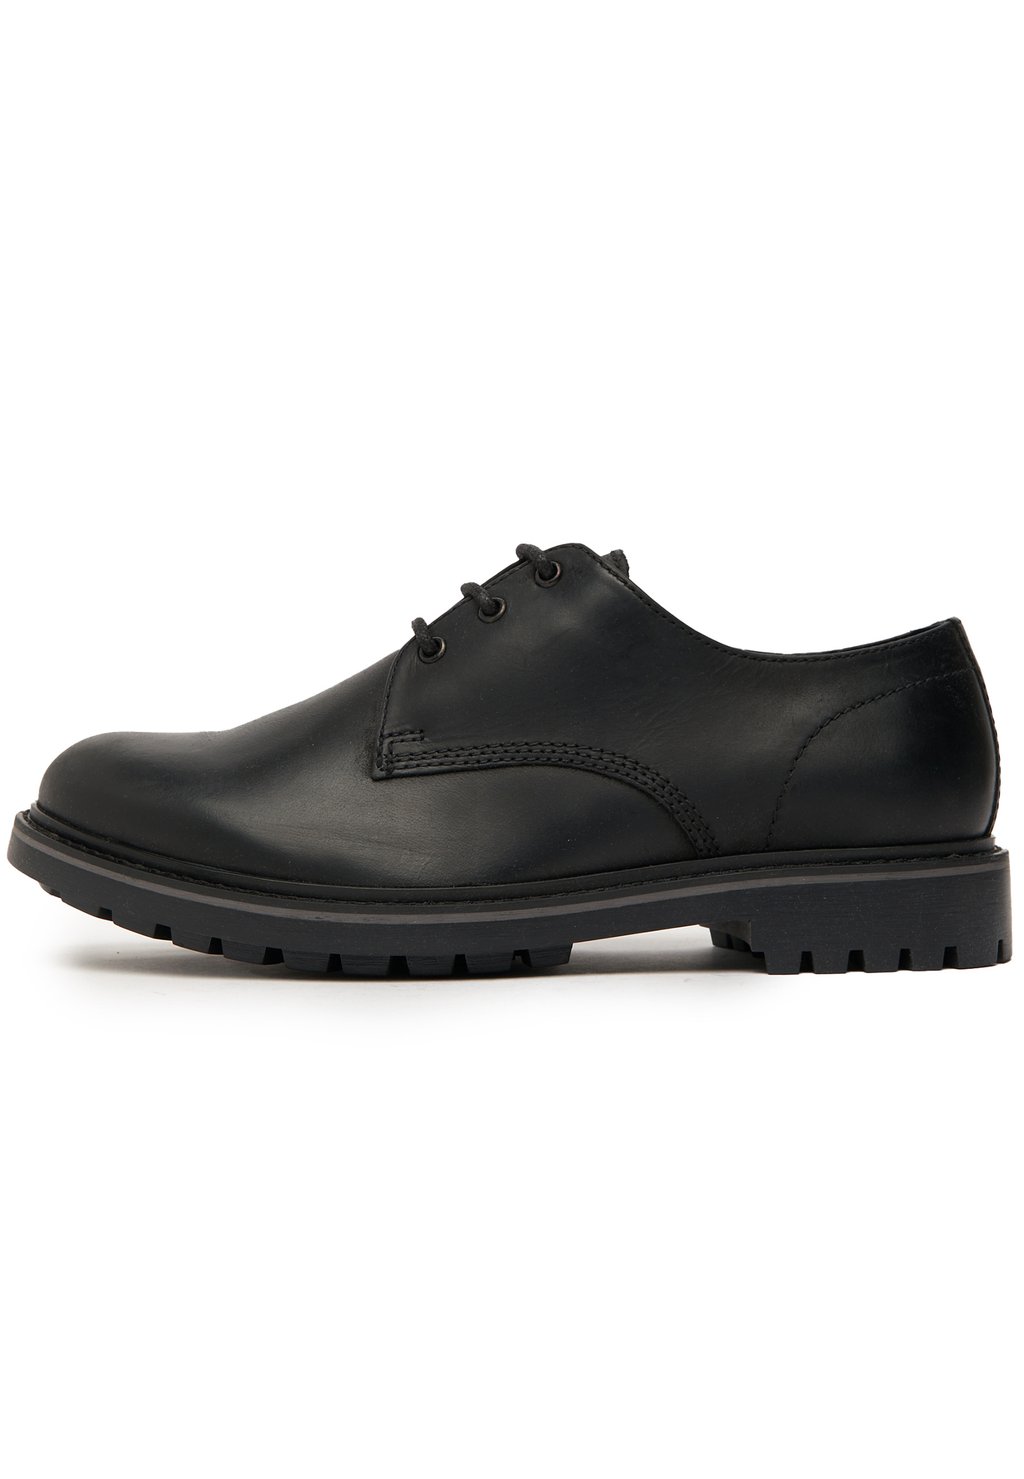 Элегантные туфли на шнуровке Pax schuh, цвет black leather